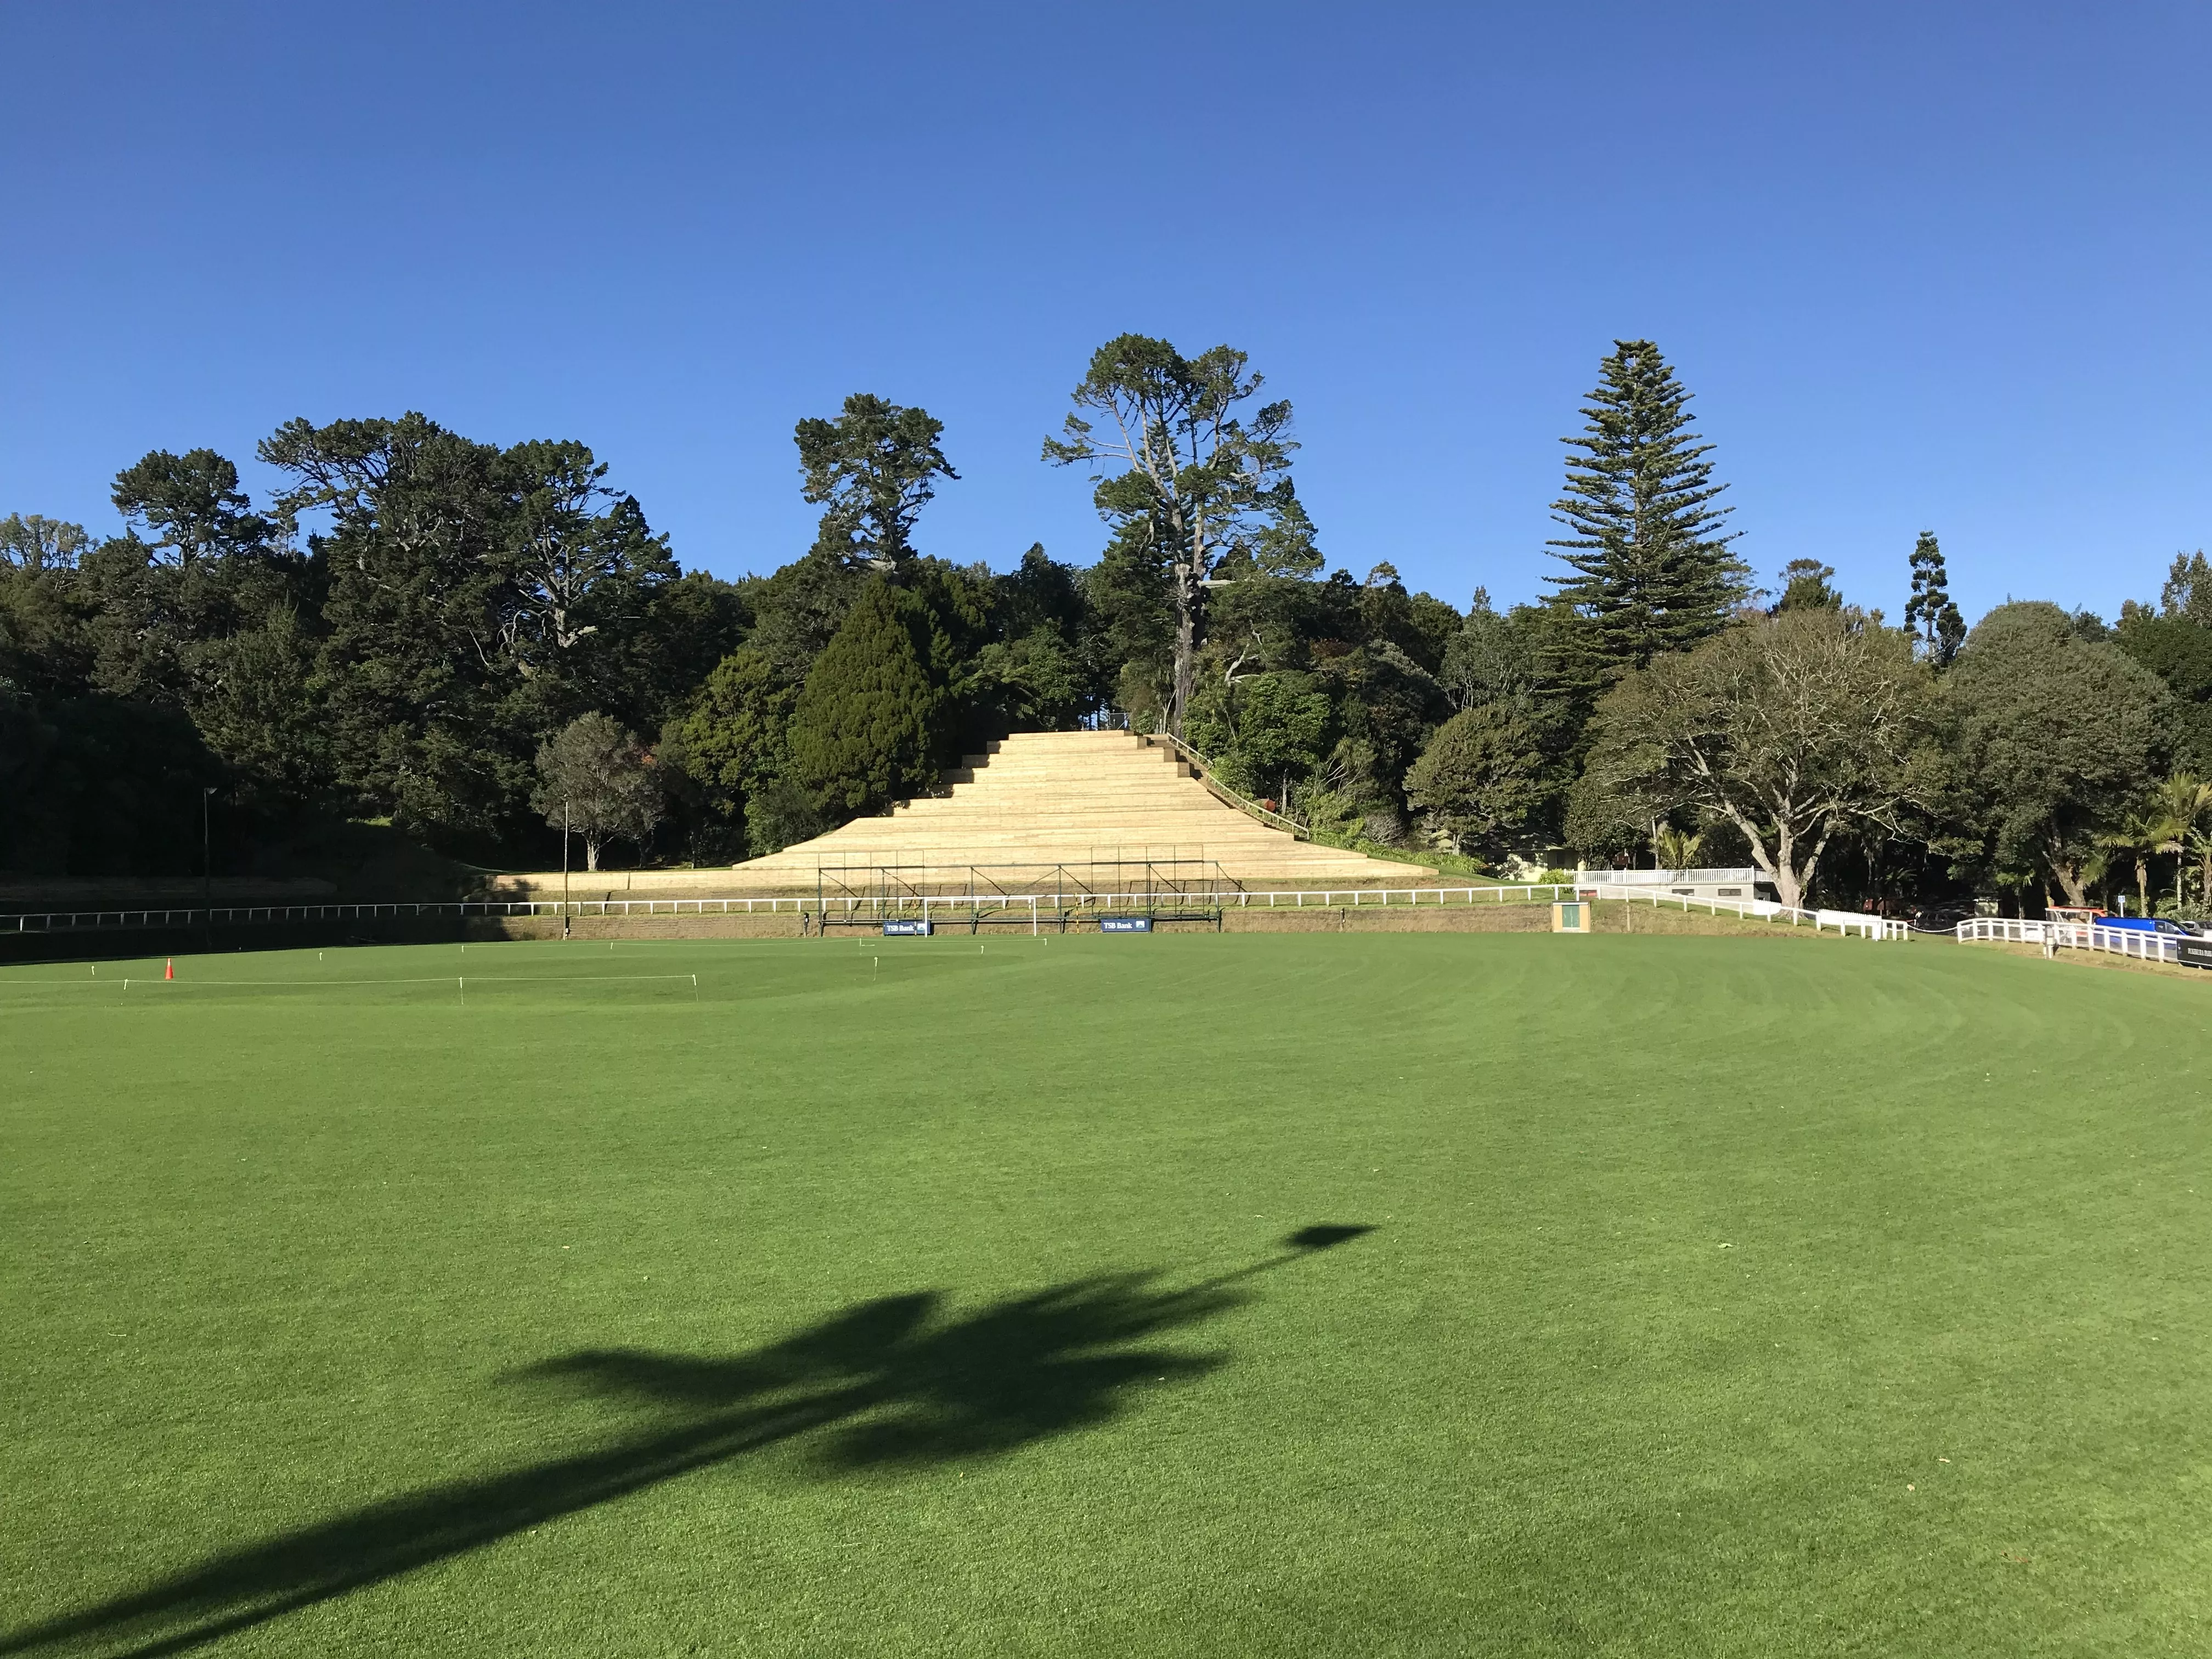 Pukekura Park in New Zealand, Australia and Oceania | Parks,Cricket - Rated 4.5